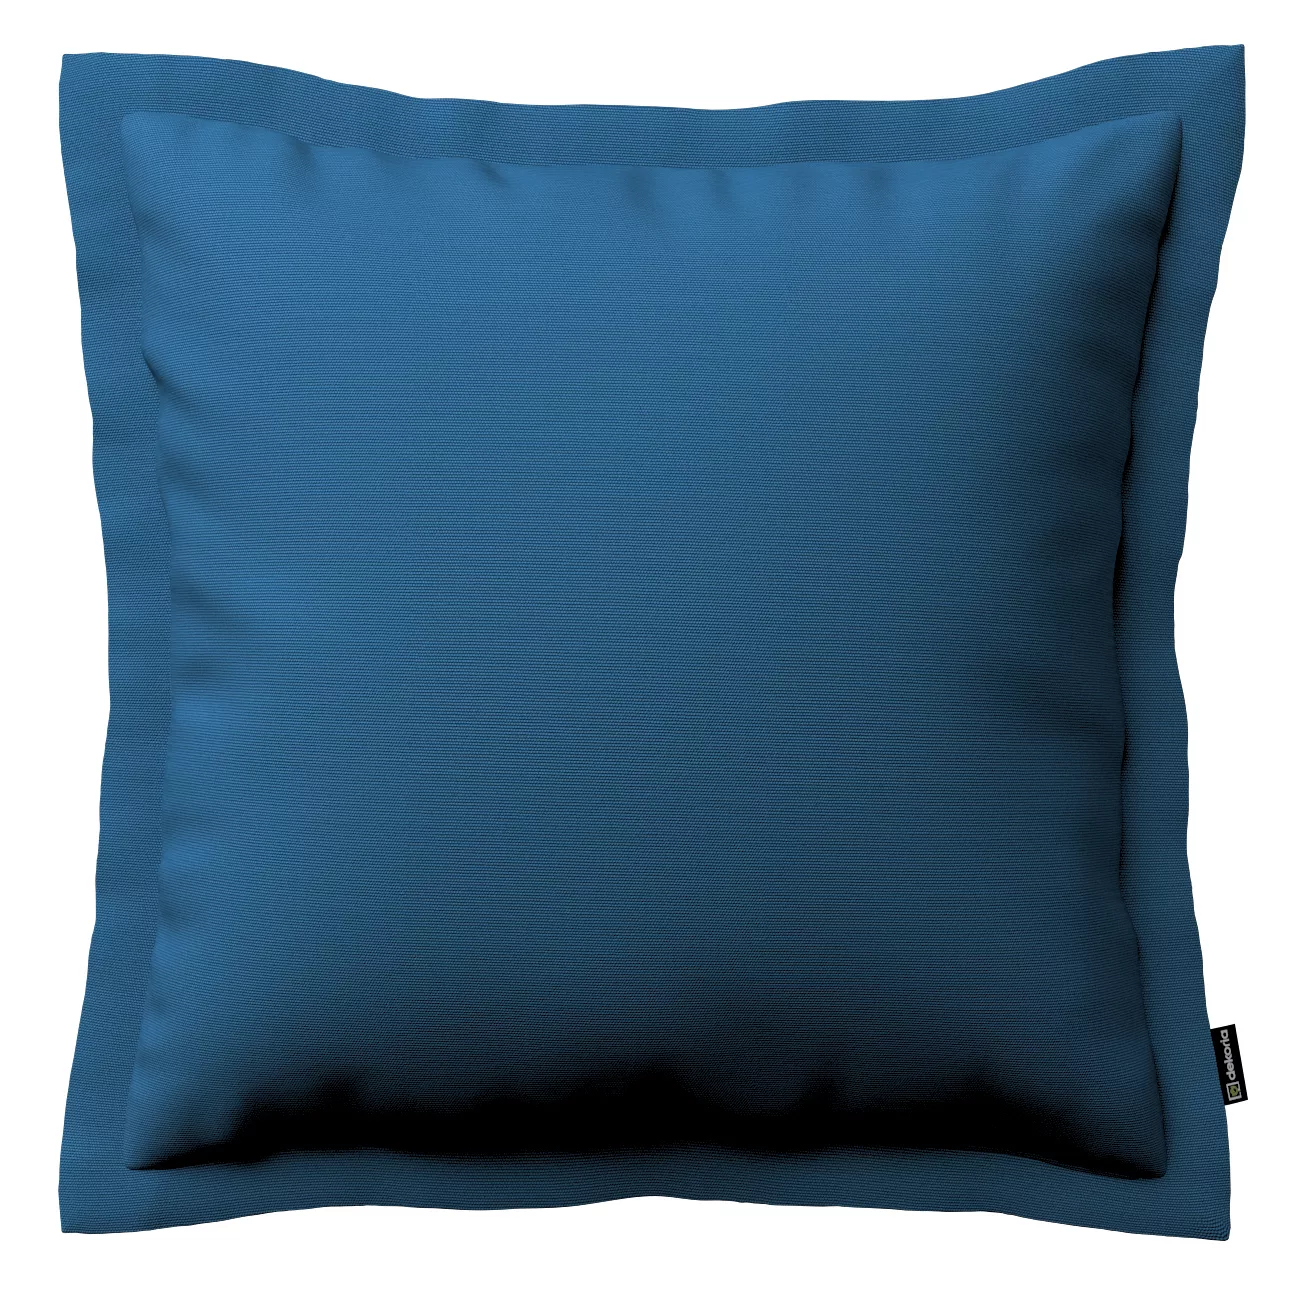 Kissenhülle Mona mit Stehsaum, marinenblau , 45 x 45 cm, Cotton Panama (702 günstig online kaufen